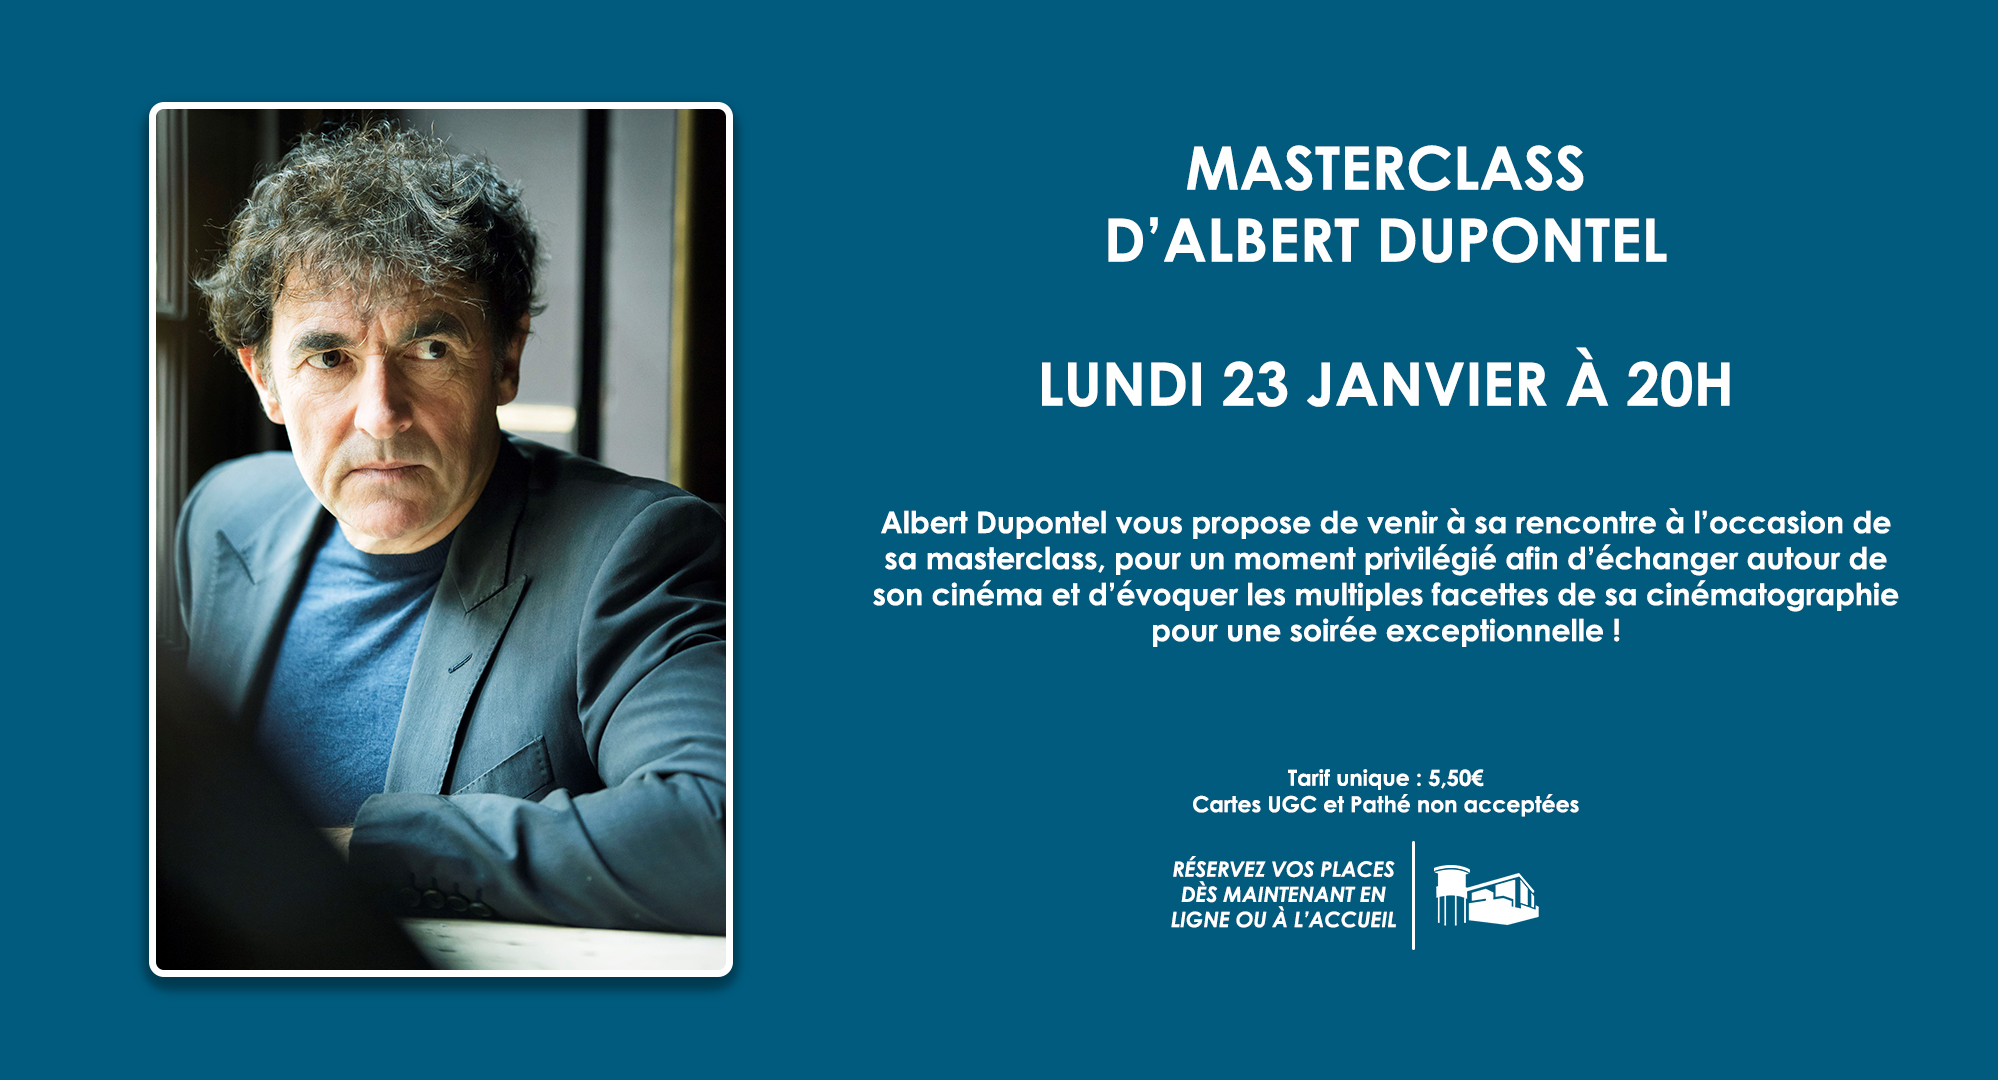 MASTERCLASS - Séance-rencontre avec Albert Dupontel lundi 23 janvier à 20h